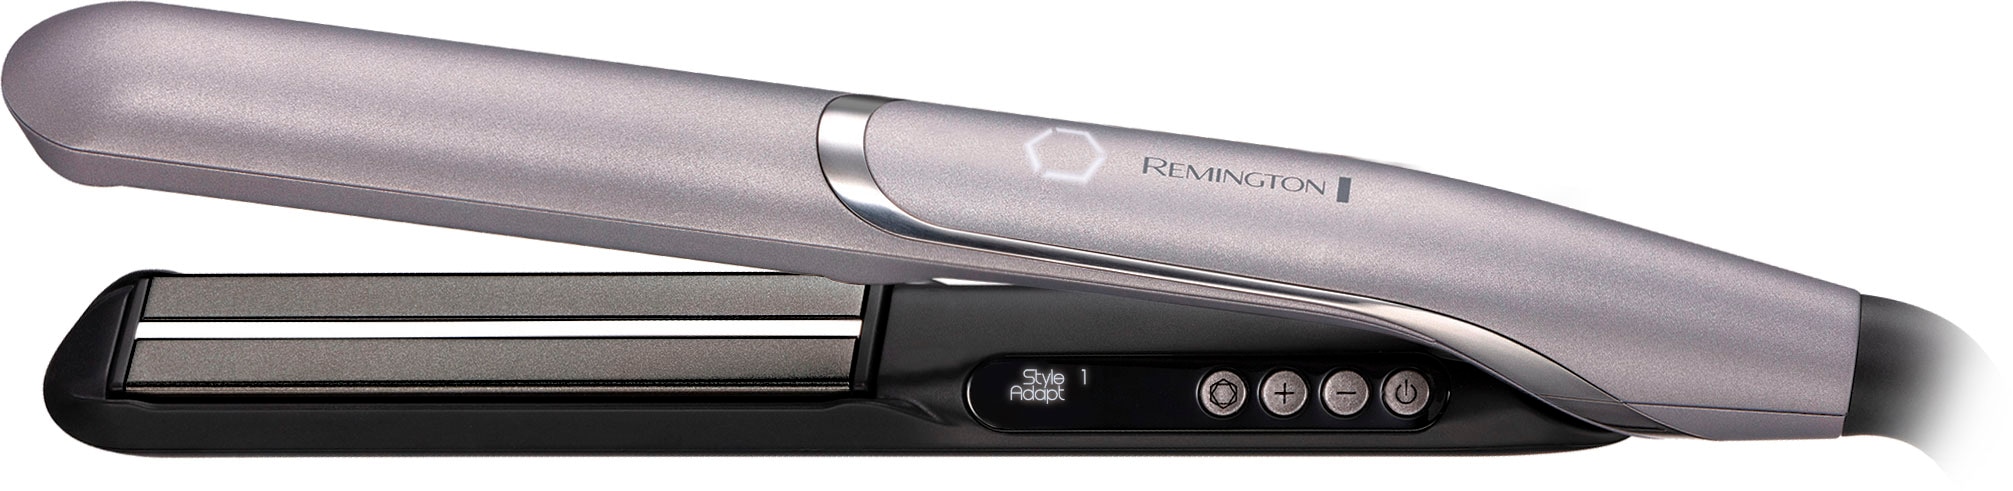 Remington Glätteisen »PROluxe You™ S9880«, Keramik-Beschichtung, lernfähiger Haarglätter, Memory Funktion, 2 StyleAdapt™ Nutzerprofile